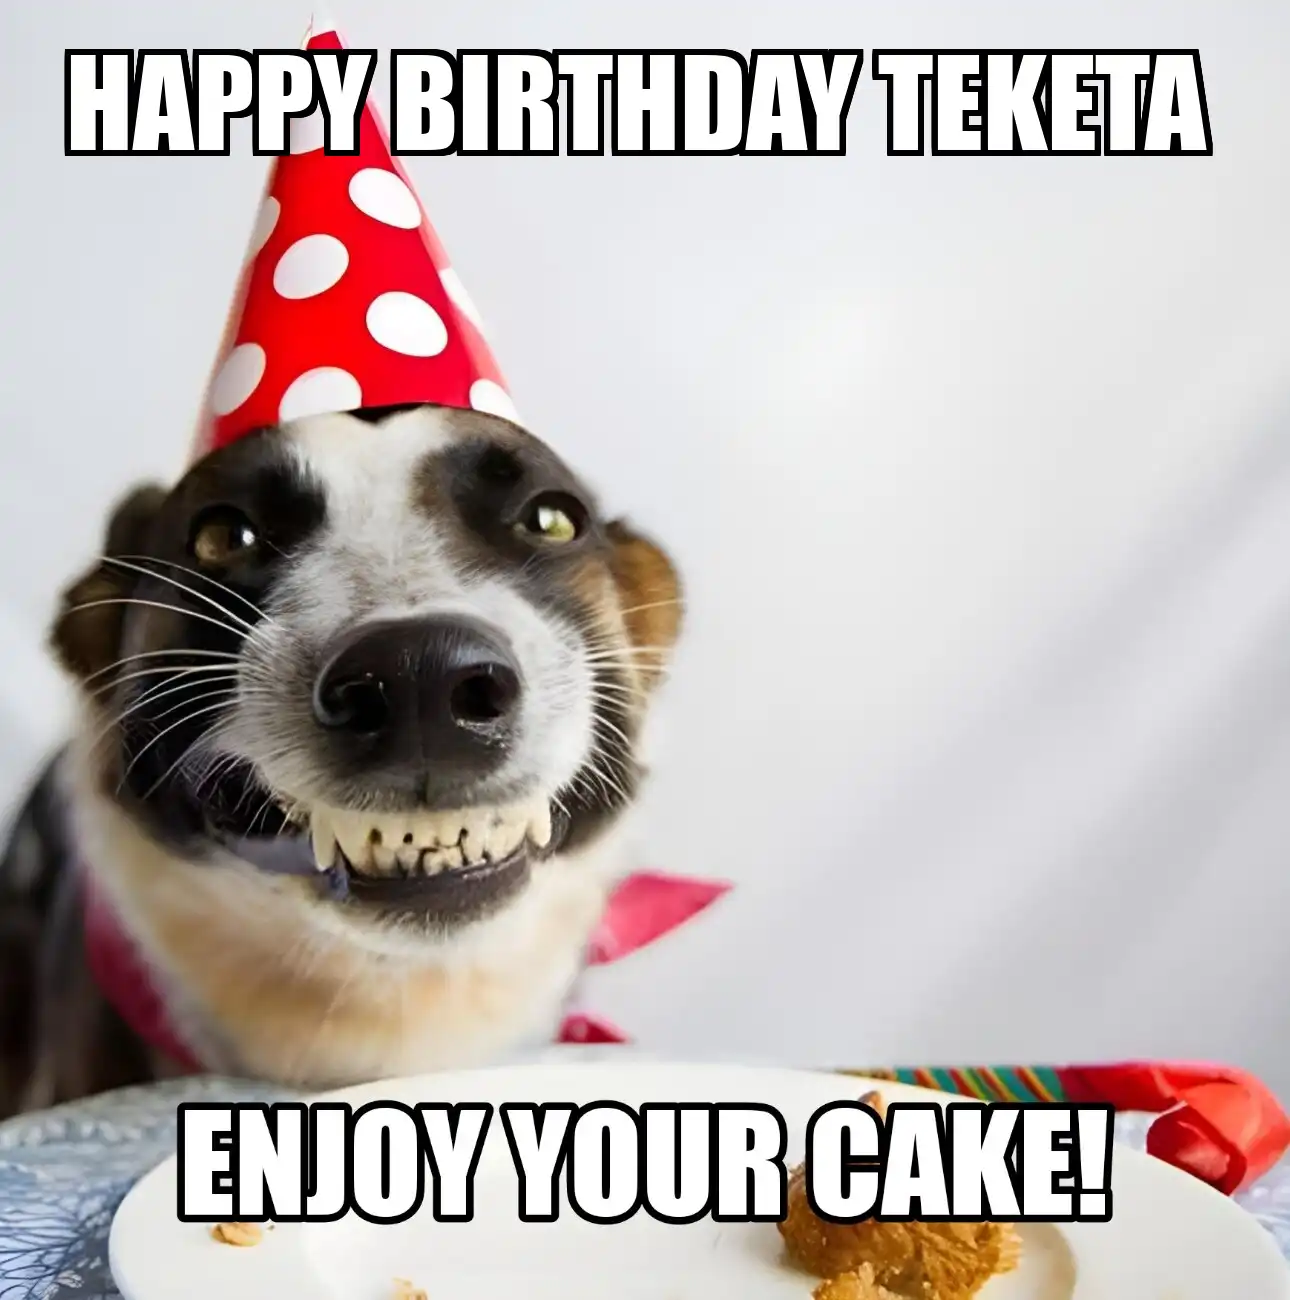 Happy Birthday Teketa Enjoy Your Cake Dog Meme